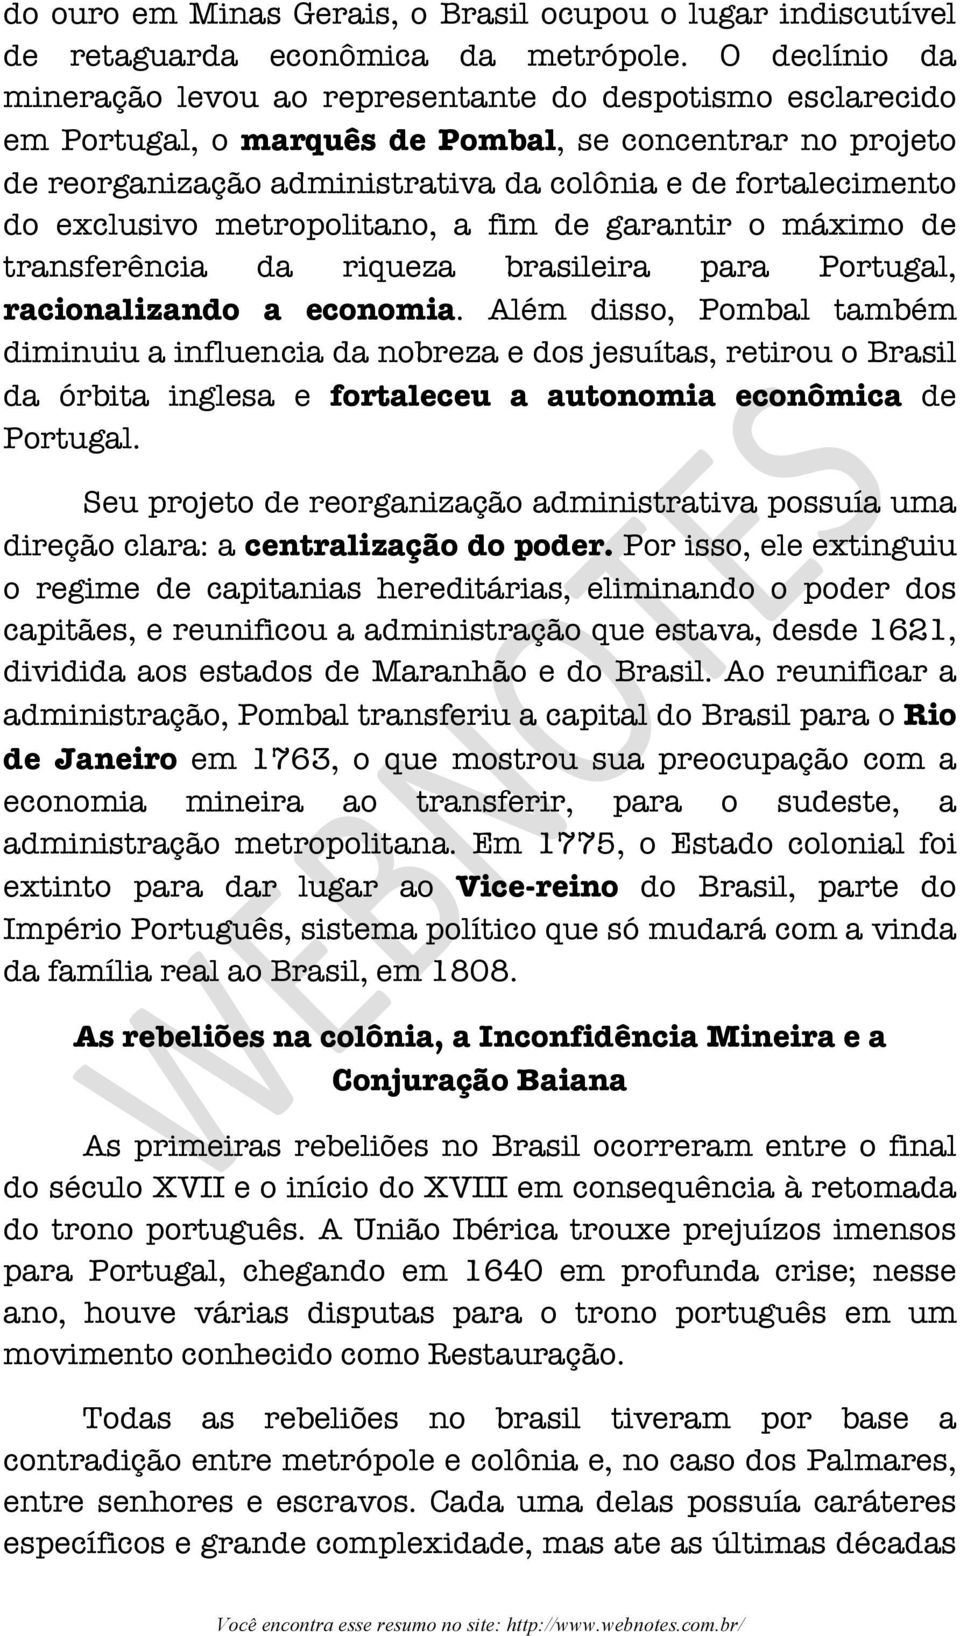 exclusivo metropolitano, a fim de garantir o máximo de transferência da riqueza brasileira para Portugal, racionalizando a economia.